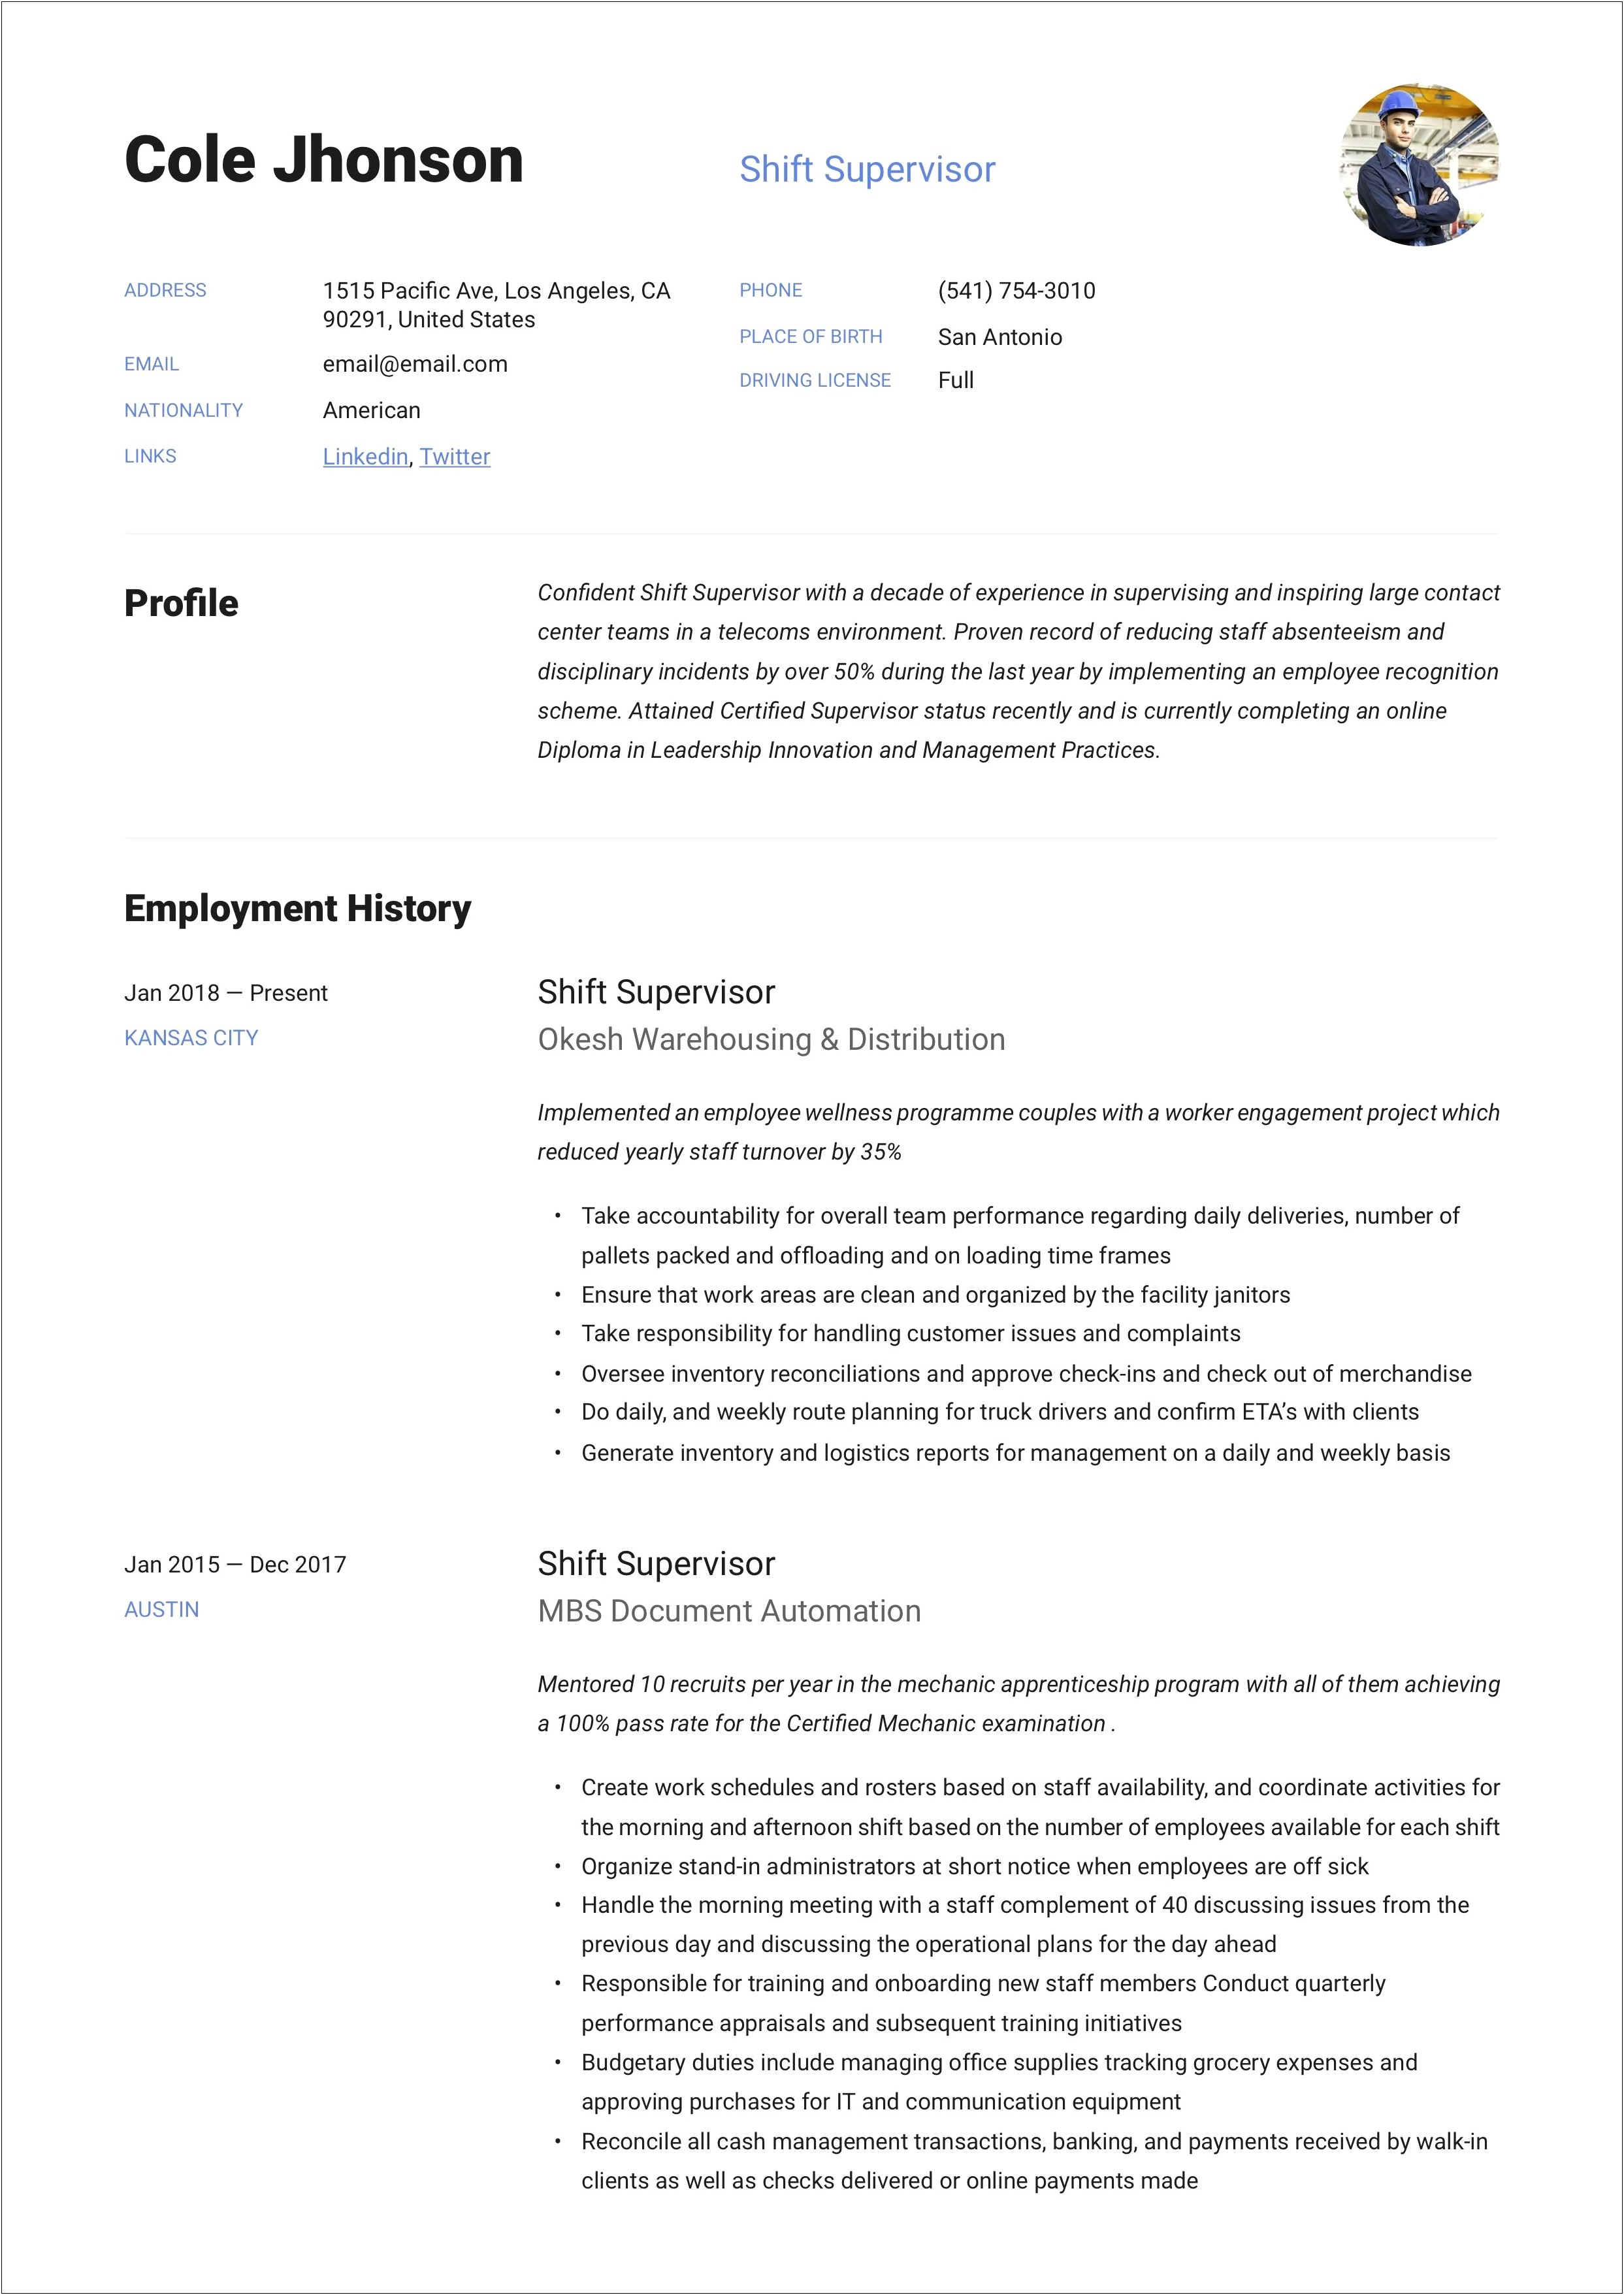 Restaurant Supervisor Job Description For Resume